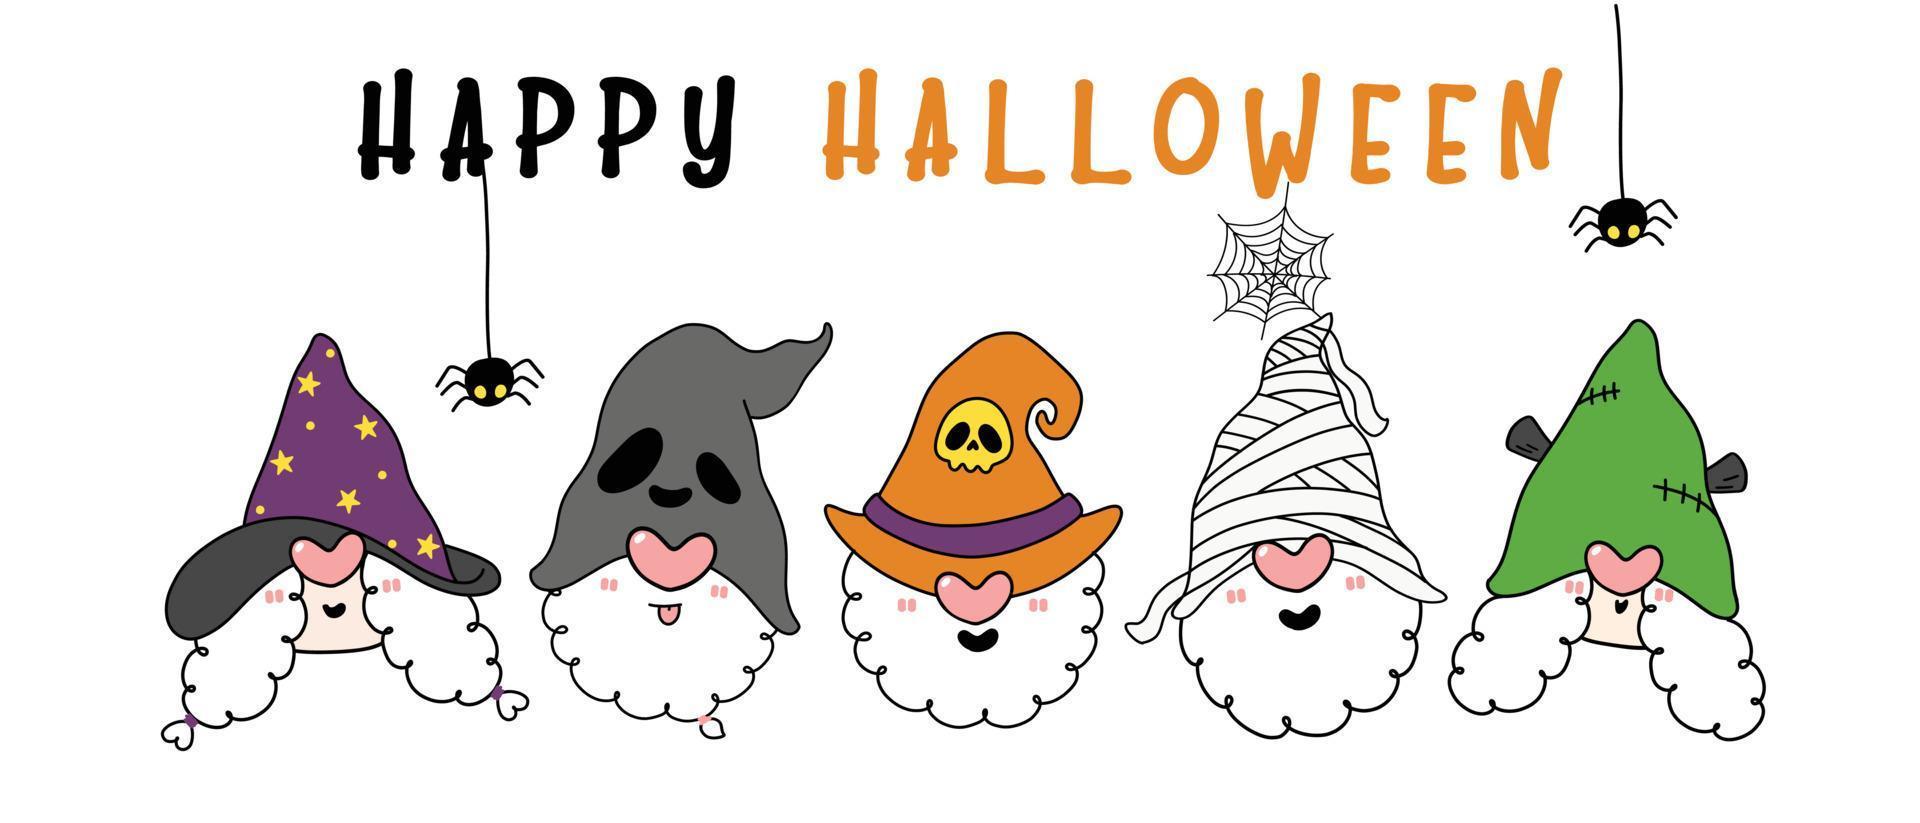 Cute happy three gnomes halloween heads in hallooween costume brujas sombreros, banner de feliz halloween, contorno de personaje de dibujos animados dibujado a mano vector